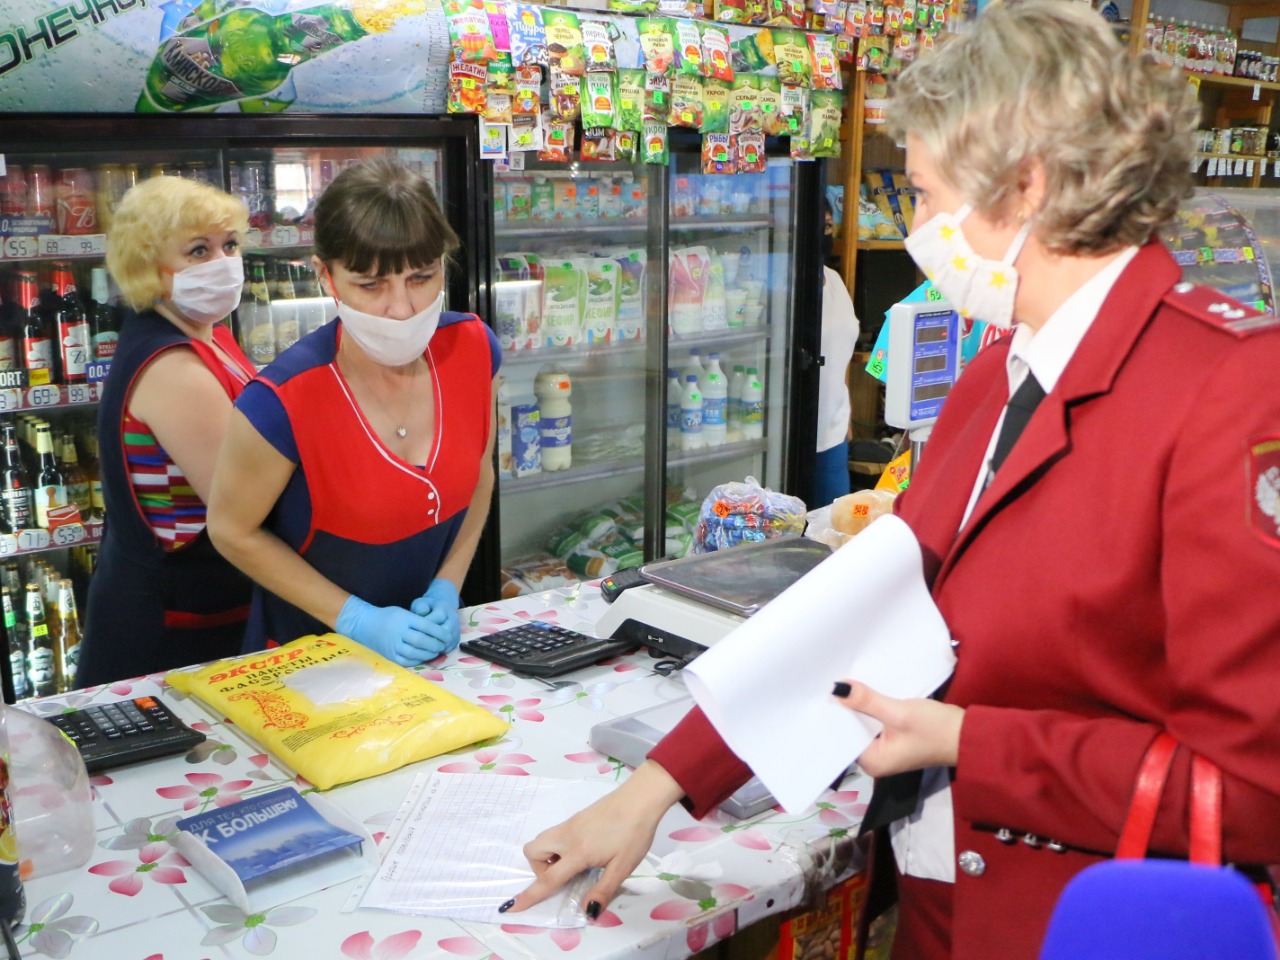 Омскому магазину грозит штраф за неприкрытые носы продавцов #Омск #Общество #Сегодня